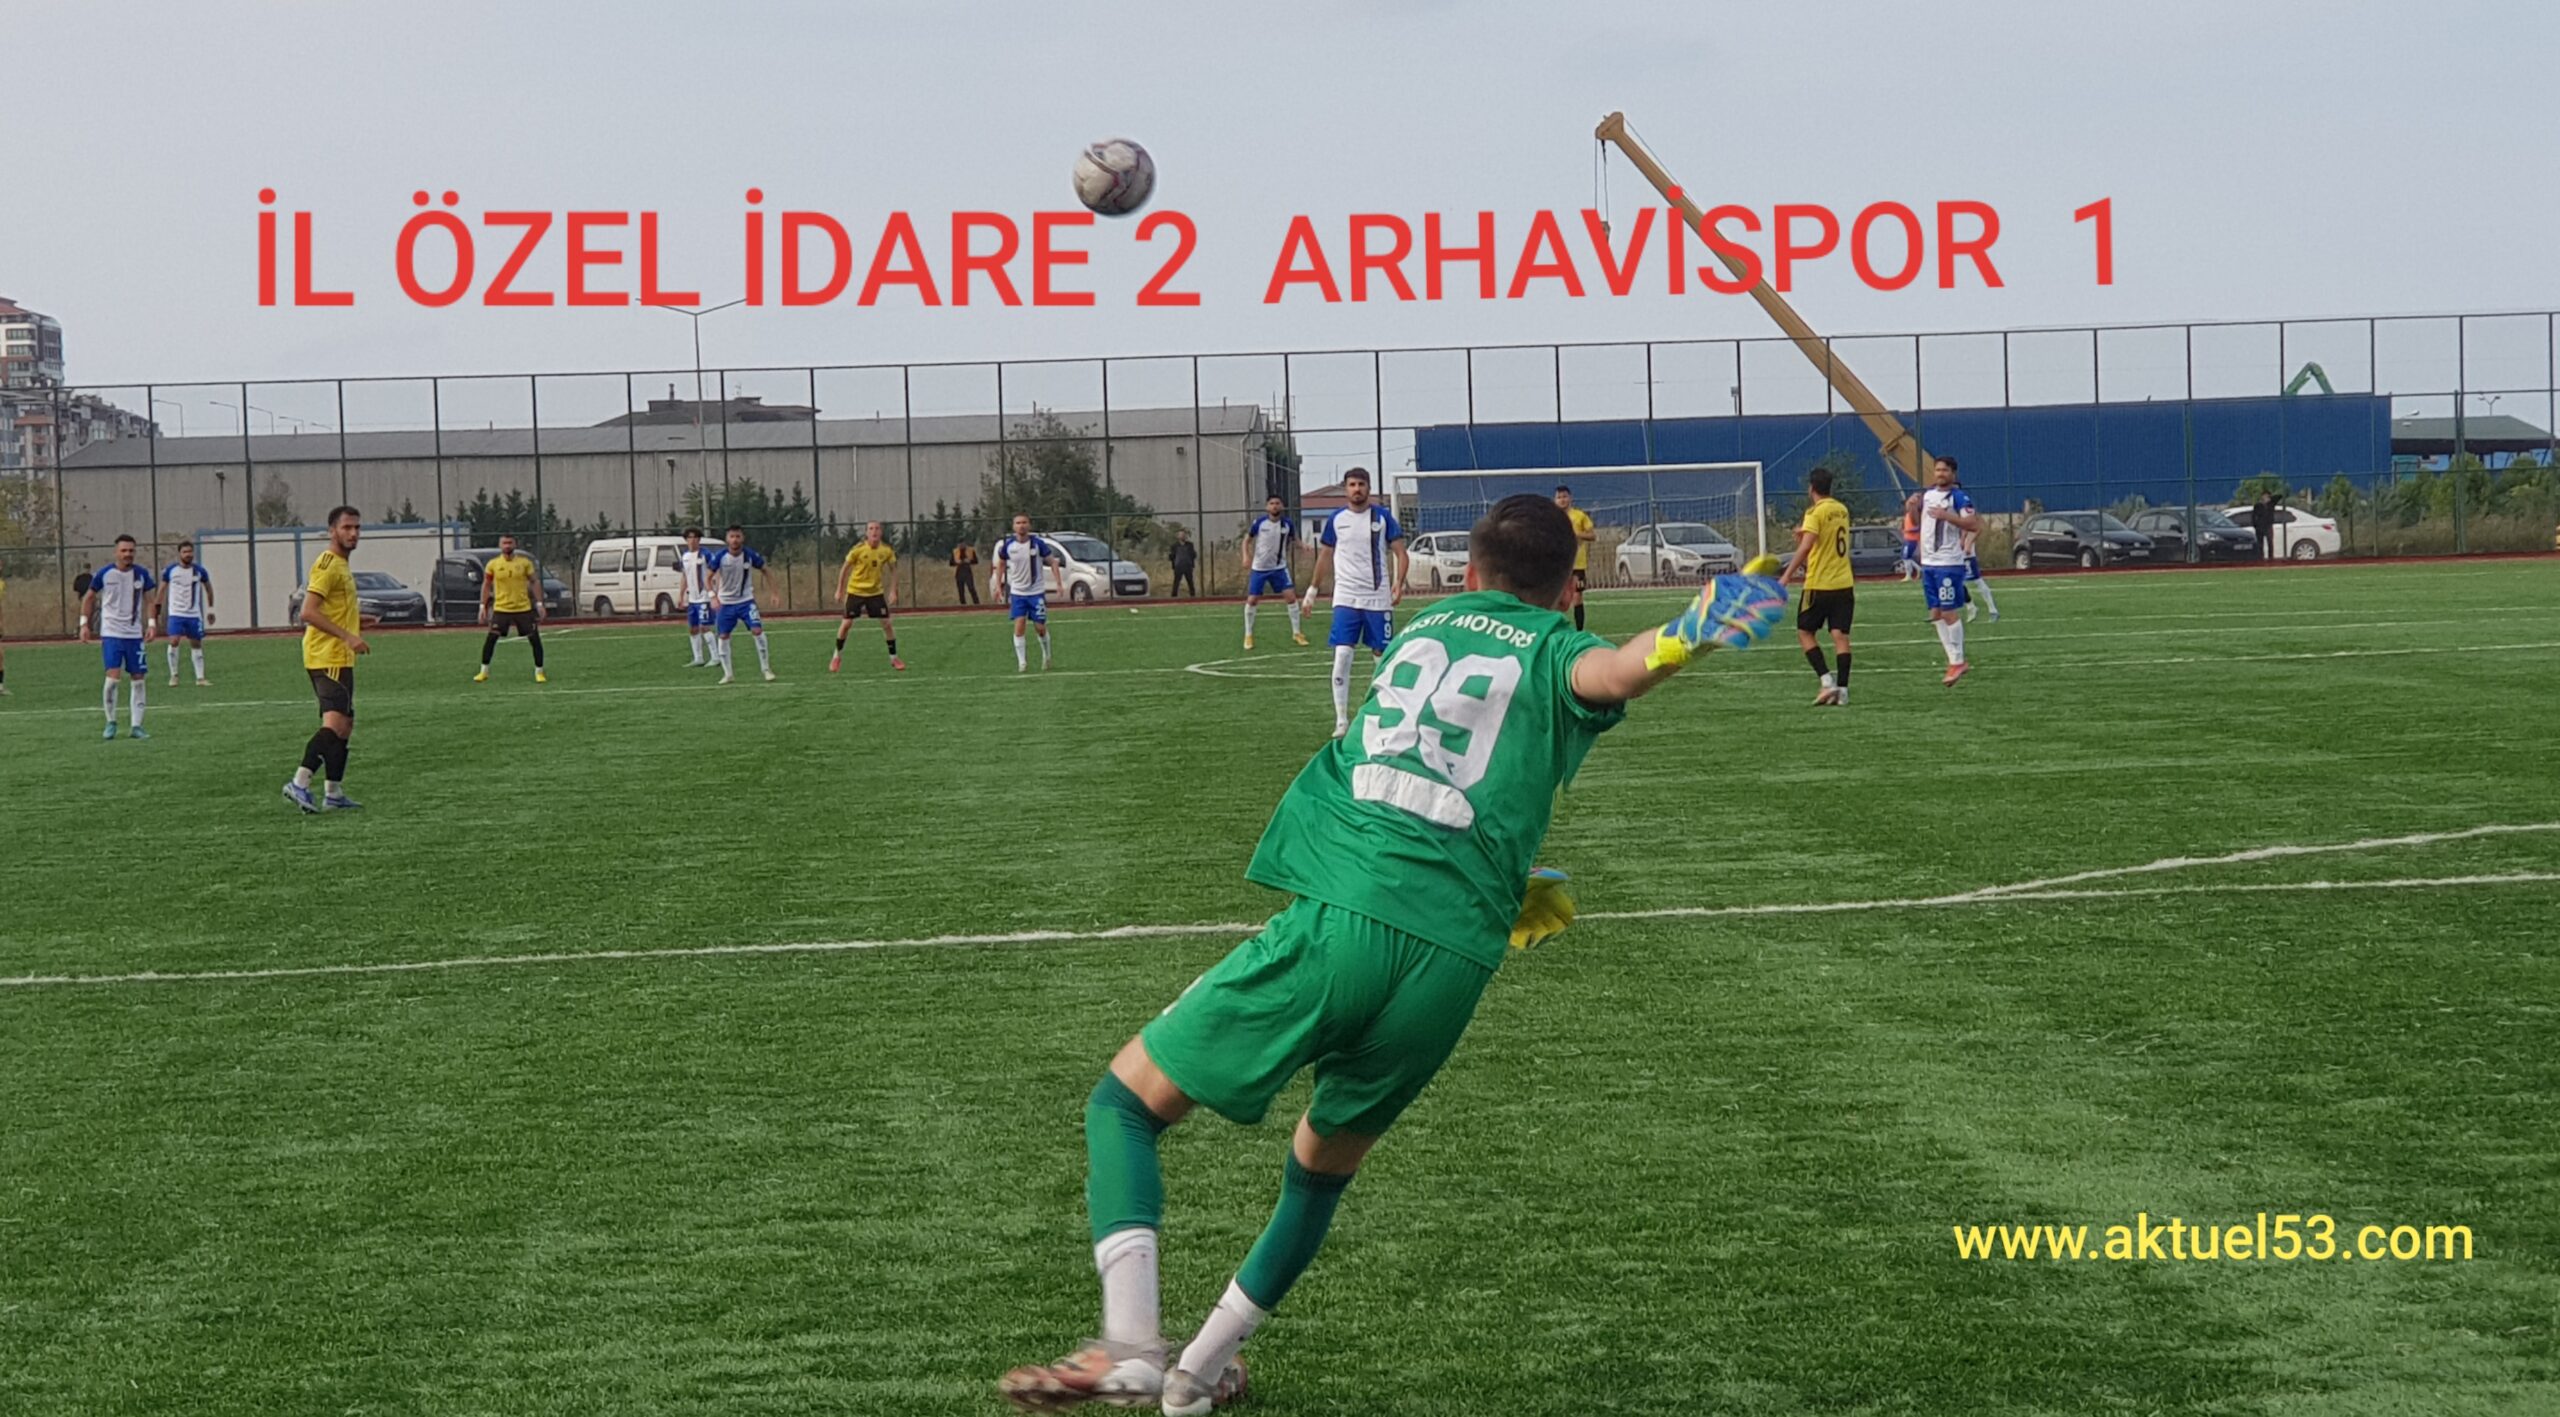 Rize İl Özel İdare, Arhavisporu 2-1 mağlup etti